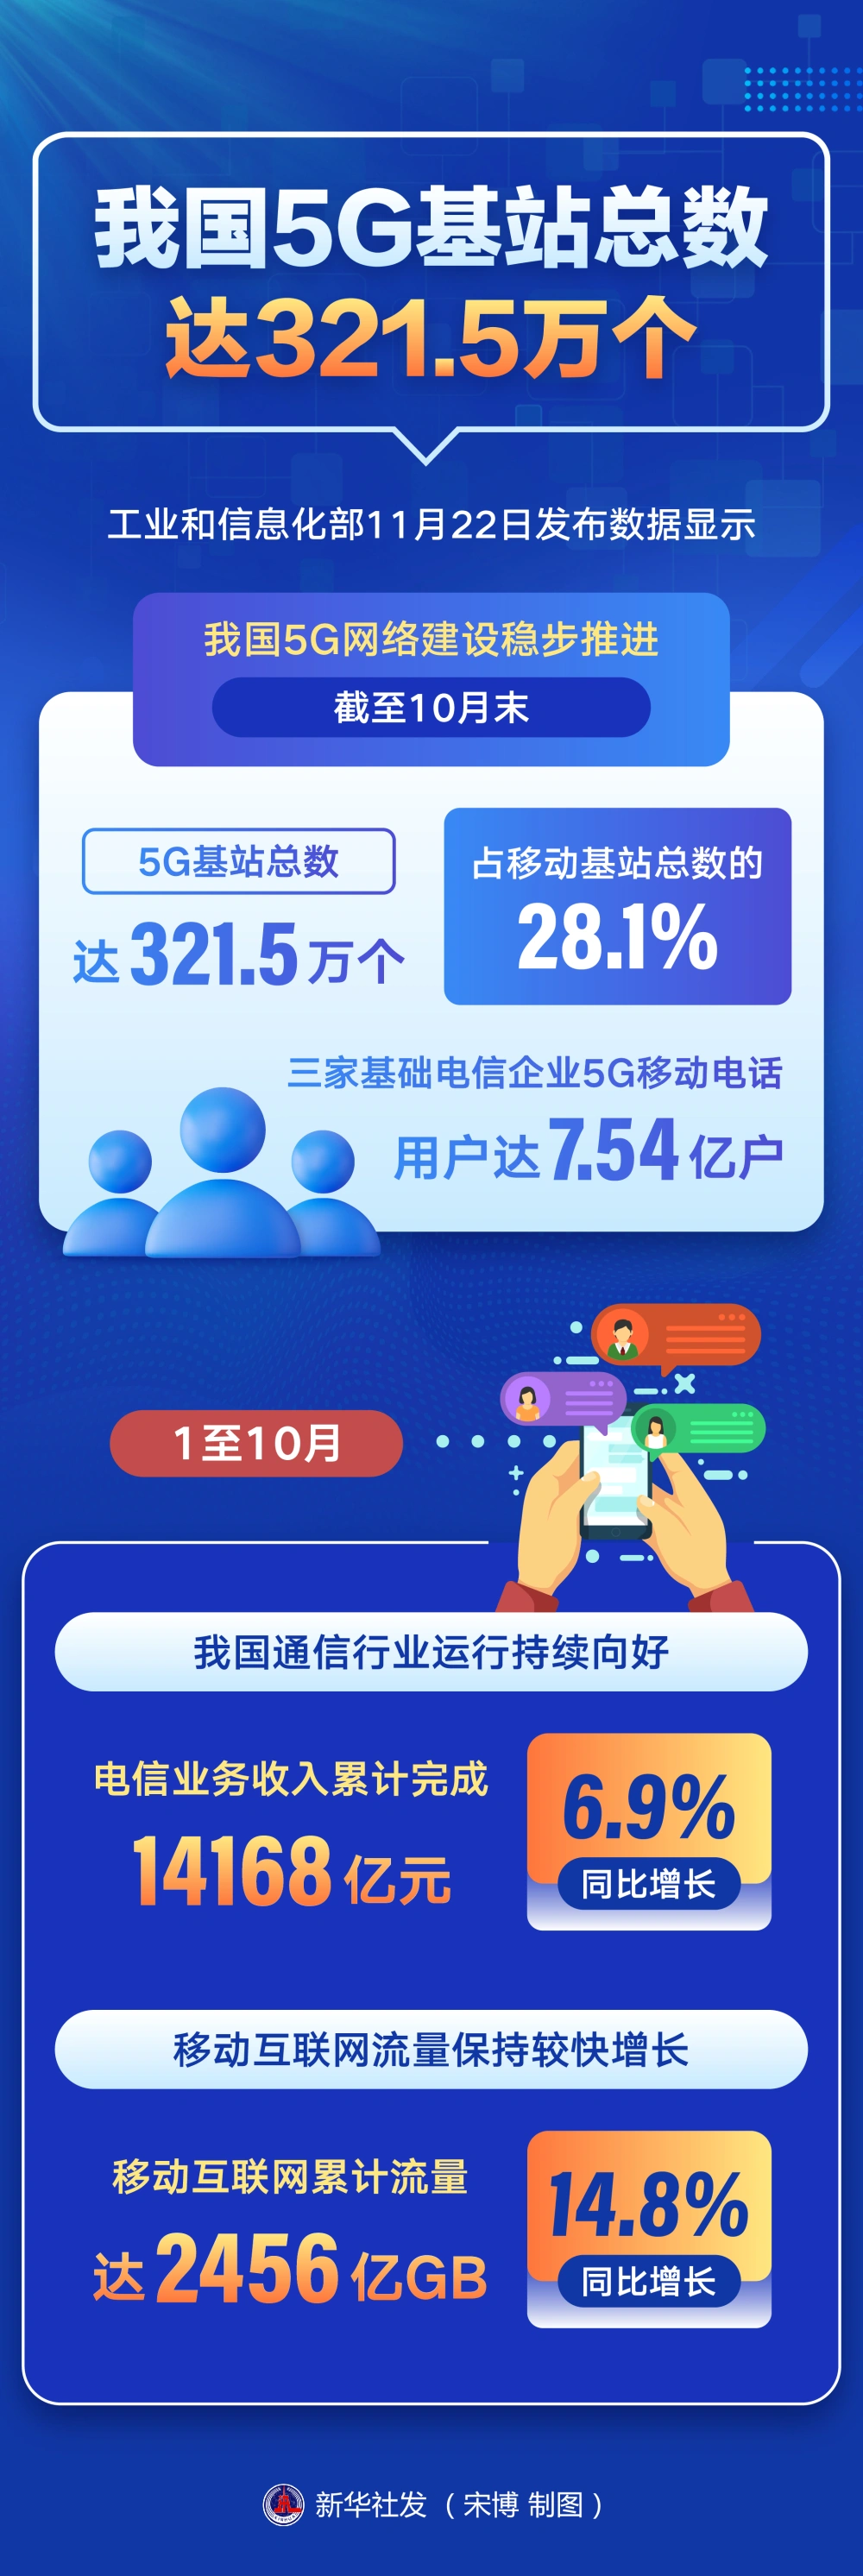 北京 5G 网络建设现状及体验：全面加速，覆盖范围稳步扩大  第2张